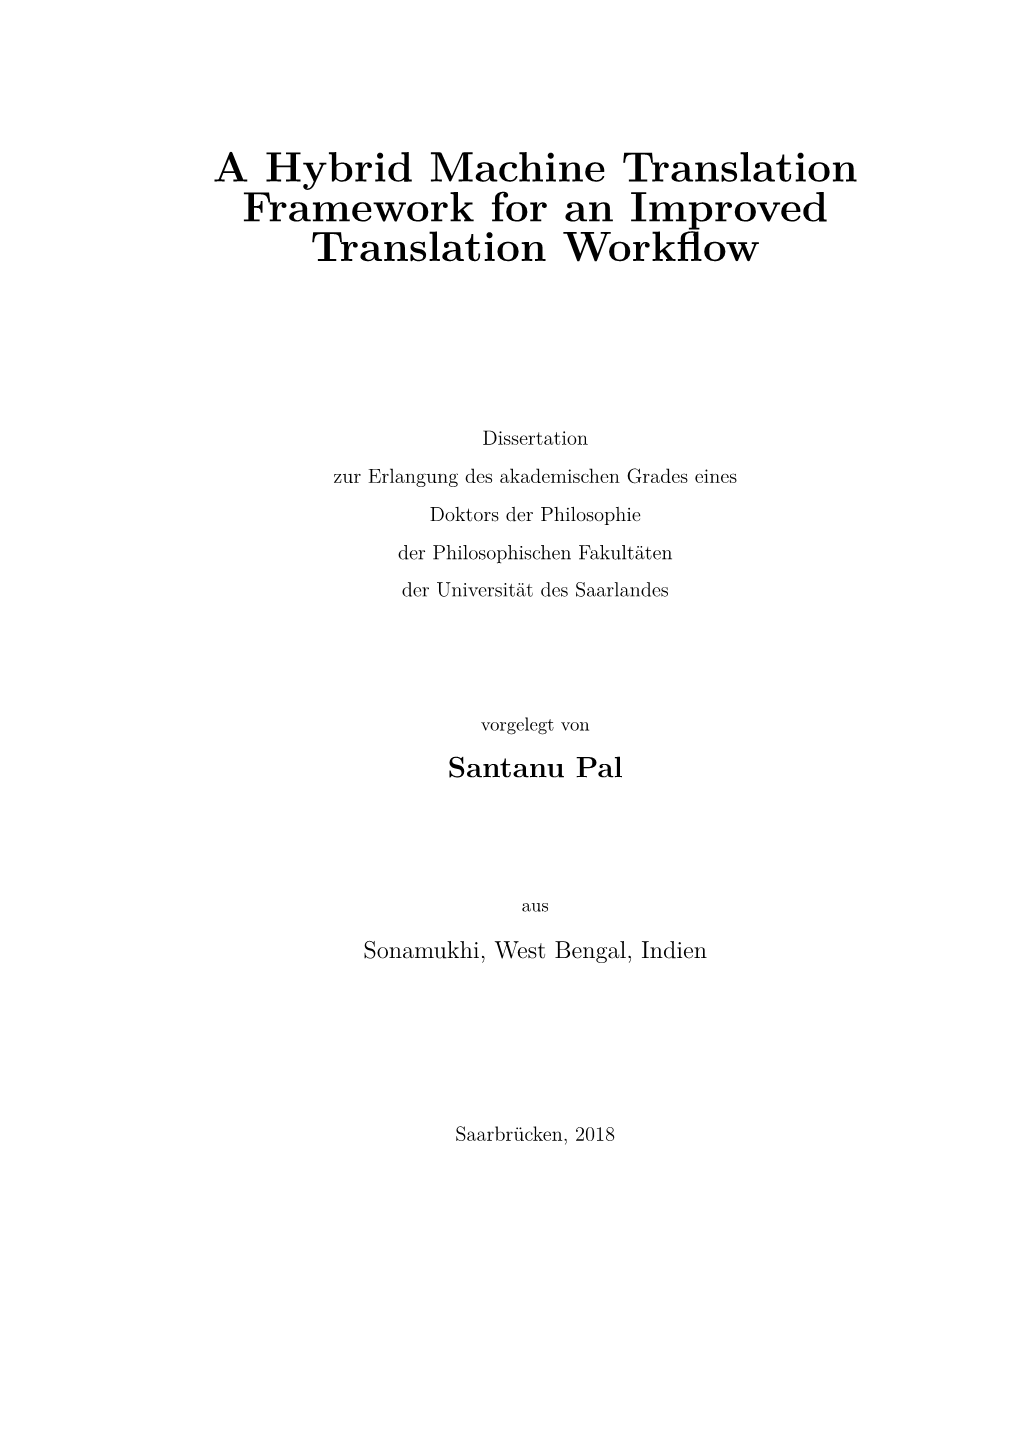 A Hybrid Machine Translation Framework for an Improved Translation Workflow